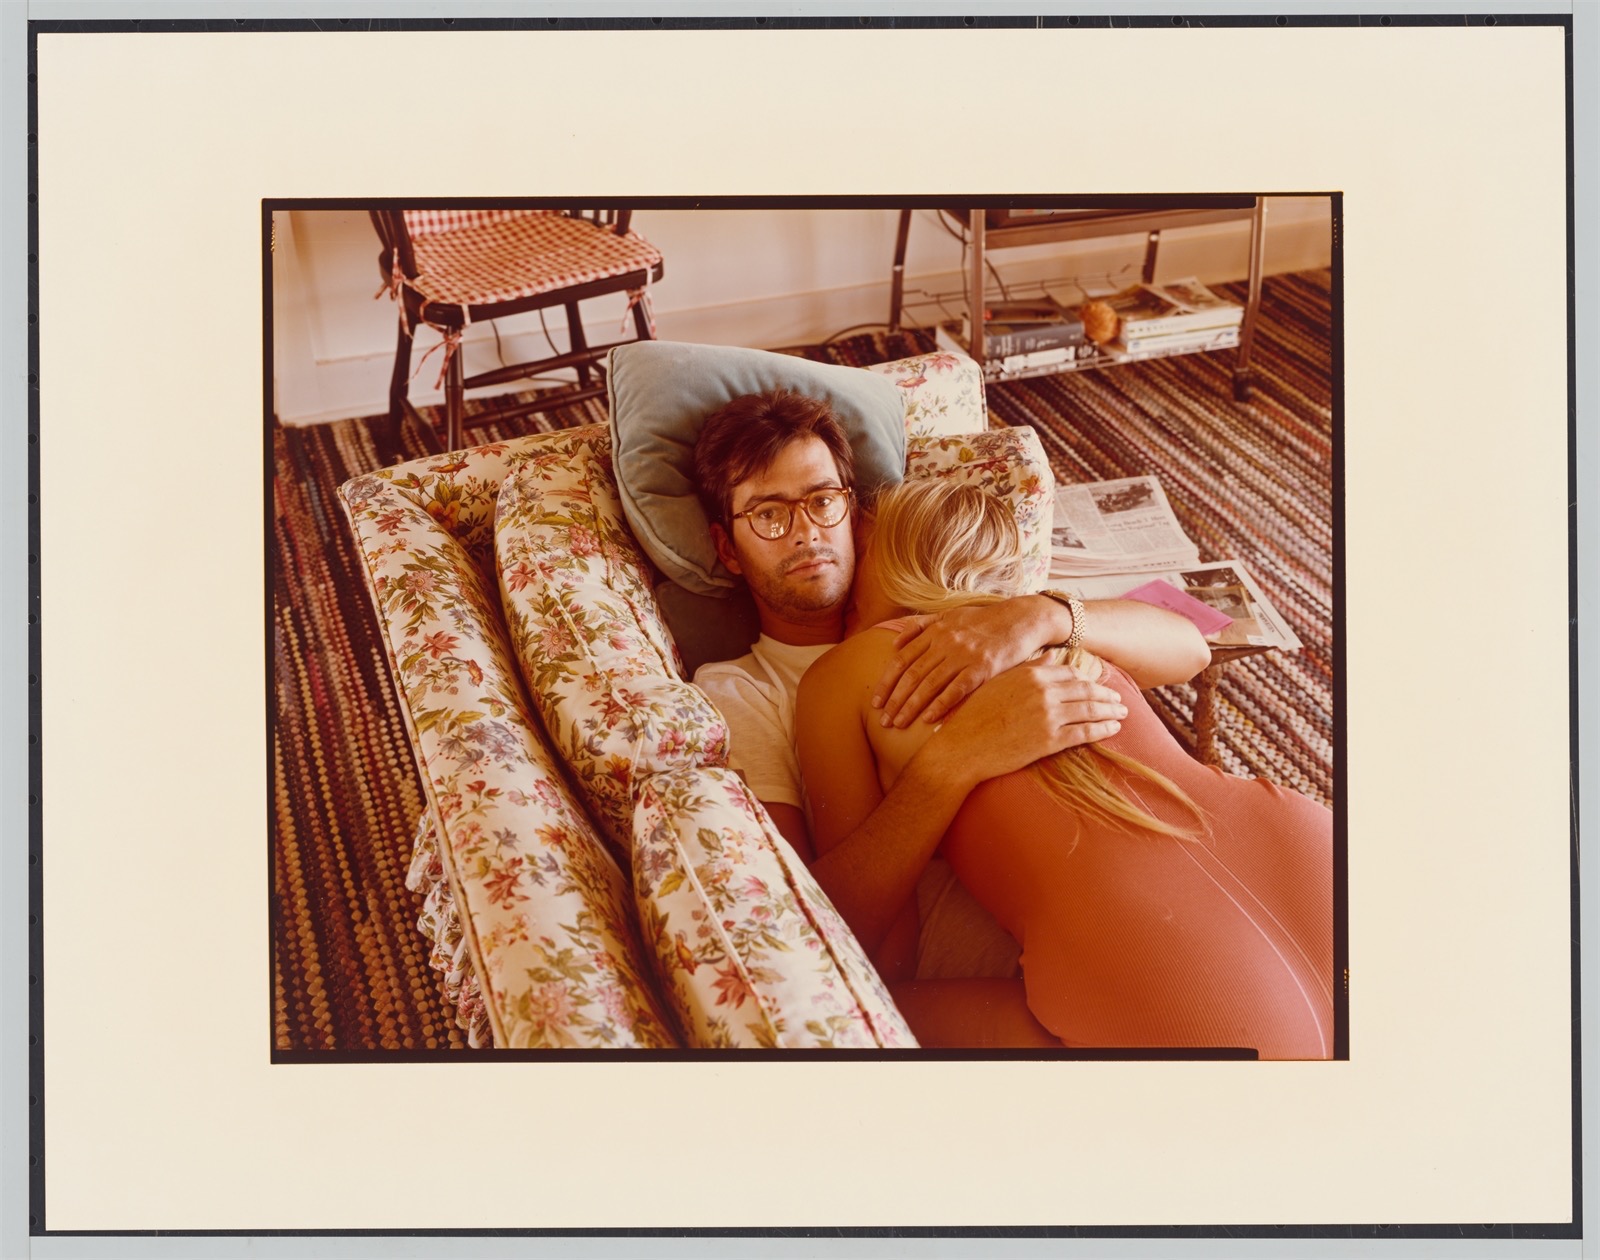 Stephen Shore. ”Michael + Sandy Marsh, Amarillo, Texas”, September 27. 1974 - Image 2 of 4